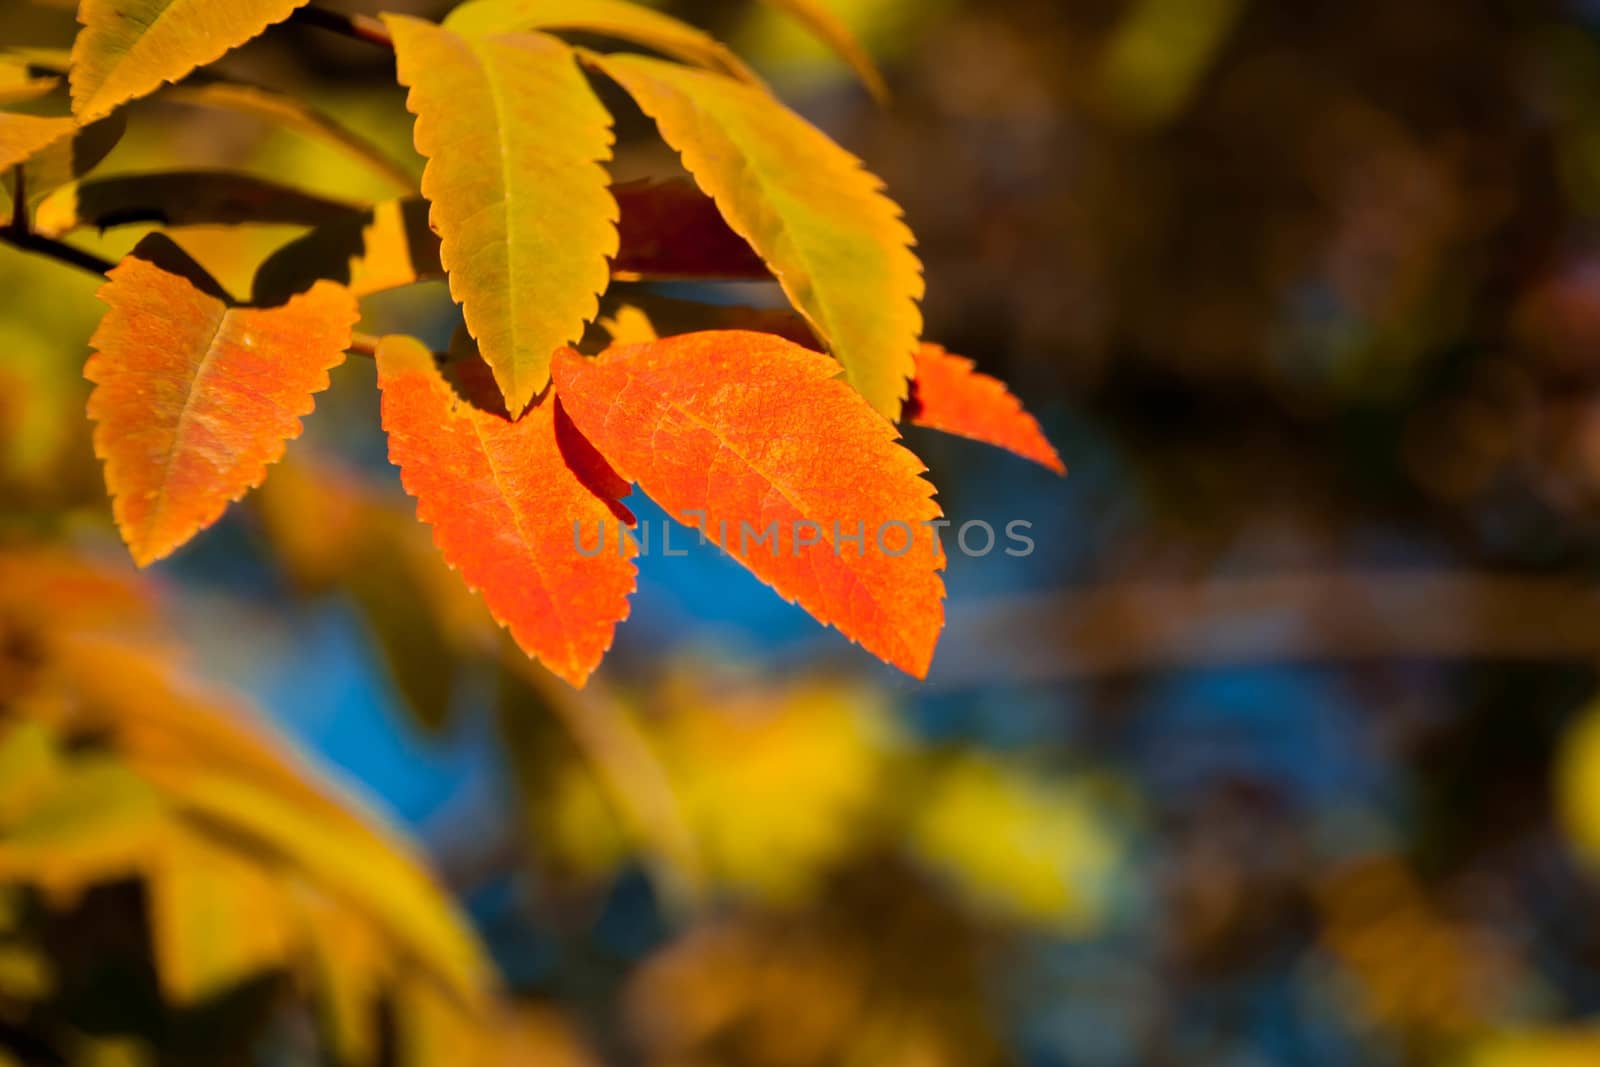 golden orange rowan tree leaves in the sunlight by alexx60